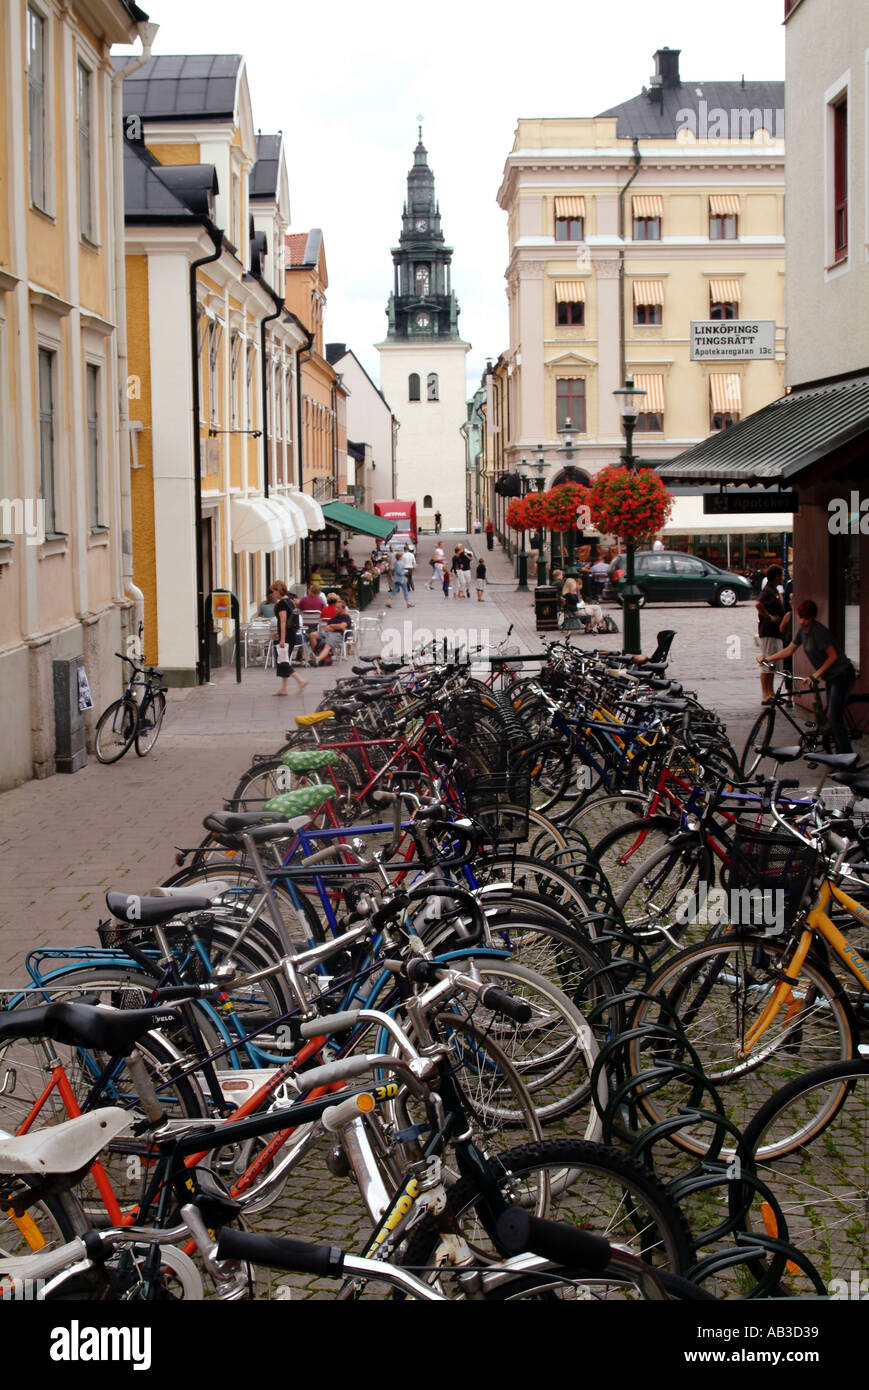 Straße Straße in Linköping in Schweden mit vielen Push Fahrrad Zyklus südlichen Schweden Norrköping Südschweden Skandinavien schwedische t Stockfoto